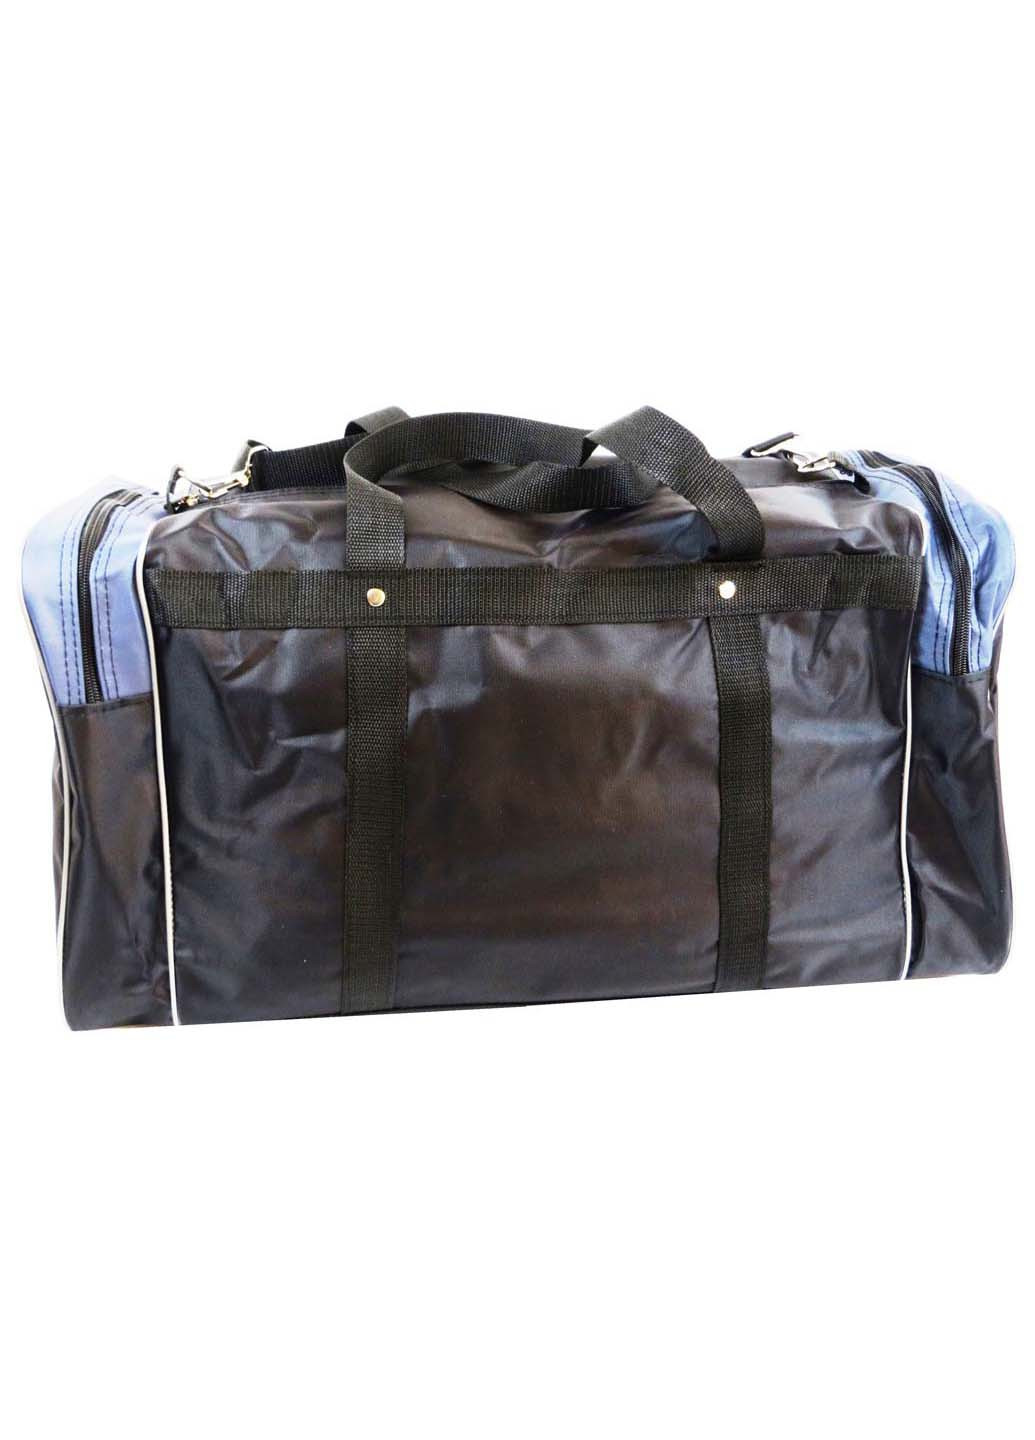 Дорожня сумка Wallaby 54x29x25 см (251205428)